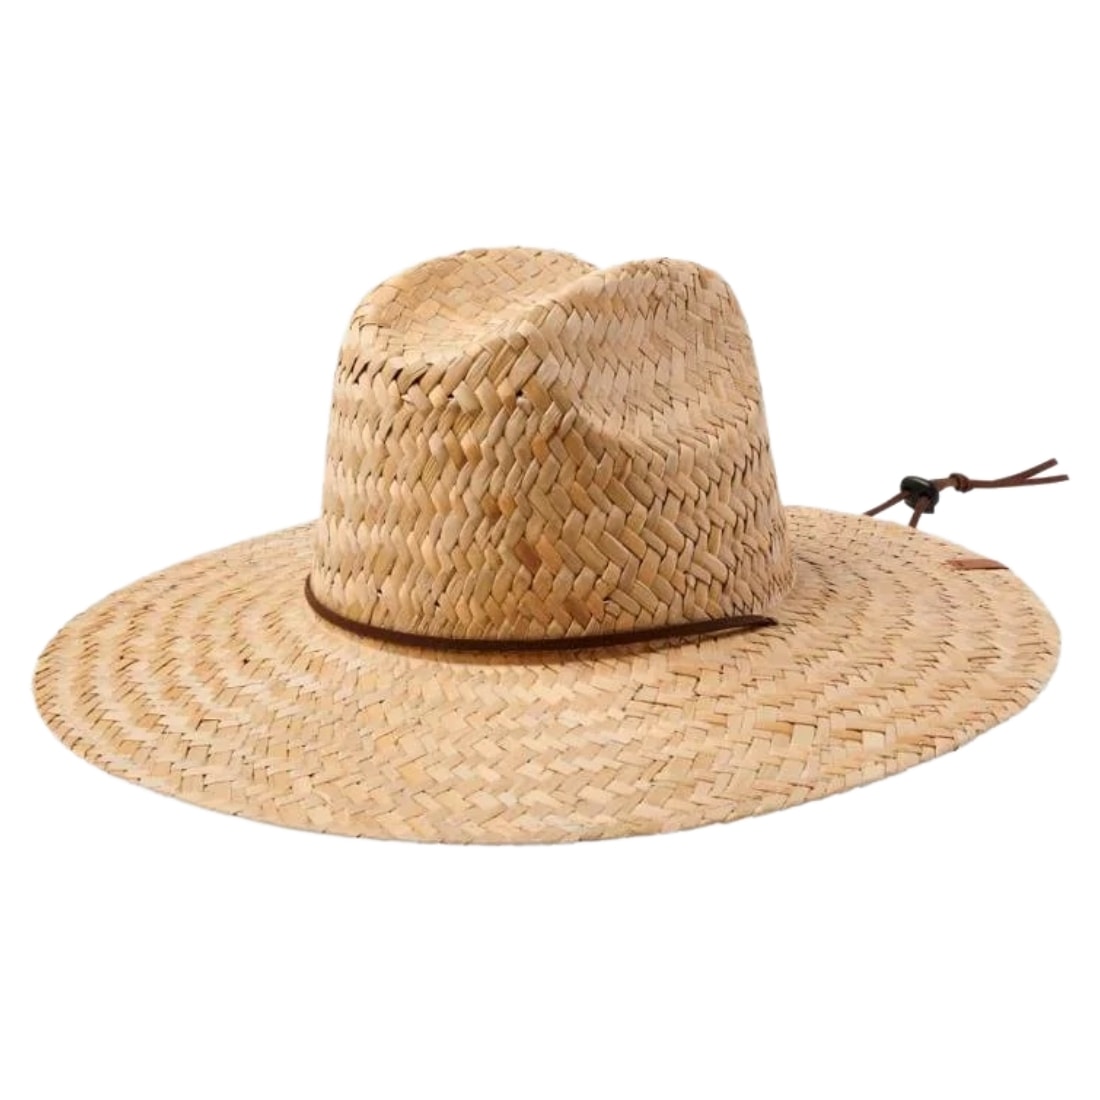 Brixton Bells II Sun Hat - Tan/Tan - Fedora/Trilby Hat by Brixton